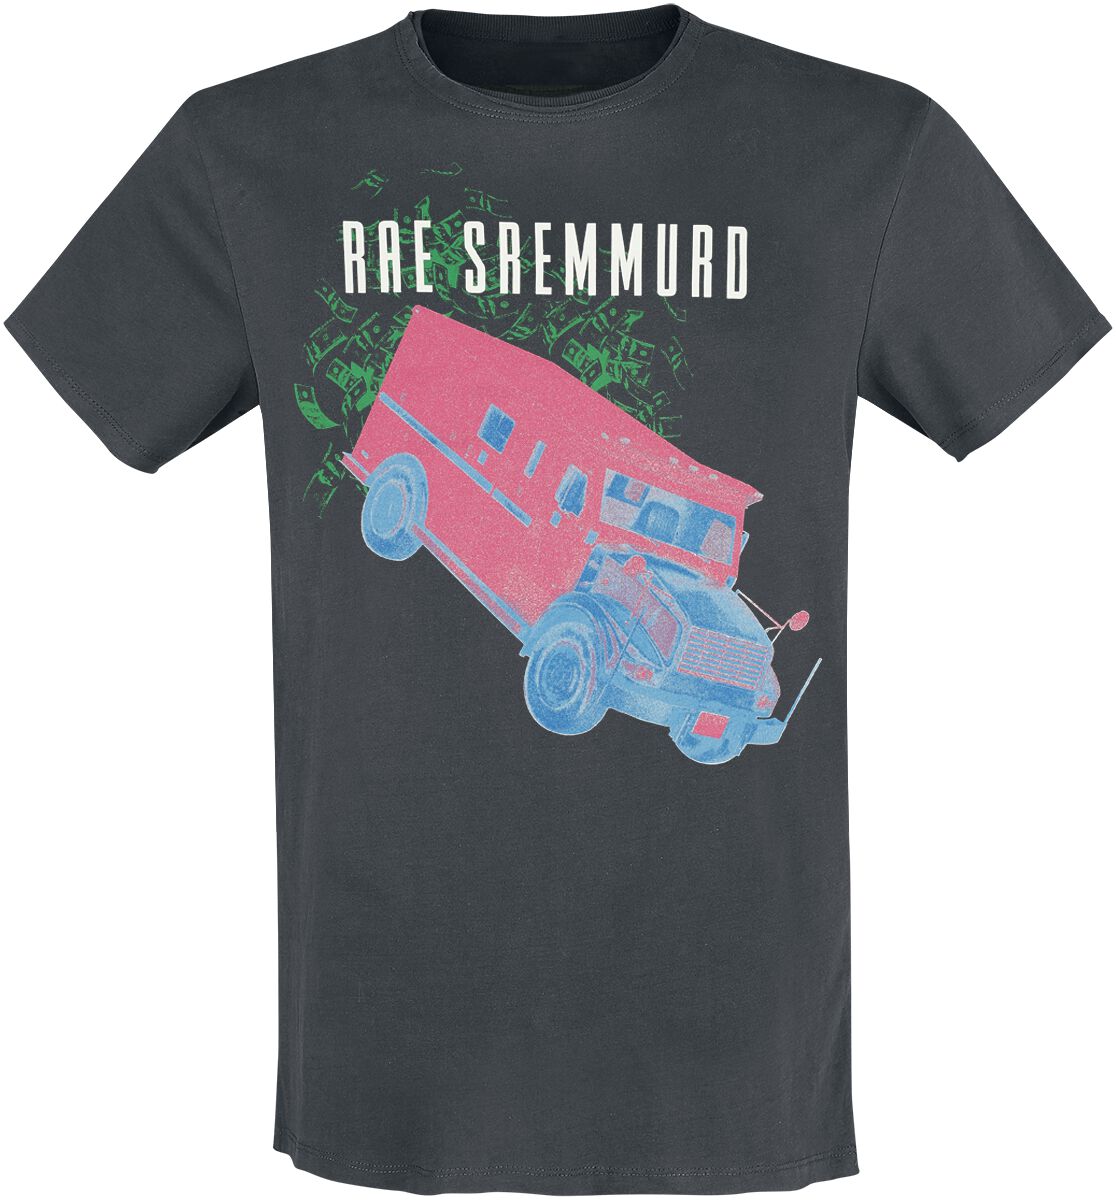 Rae Sremmurd T-Shirt - Amplified Collection - Cash Heist - S bis 3XL - für Männer - Größe L - charcoal  - Lizenziertes Merchandise!